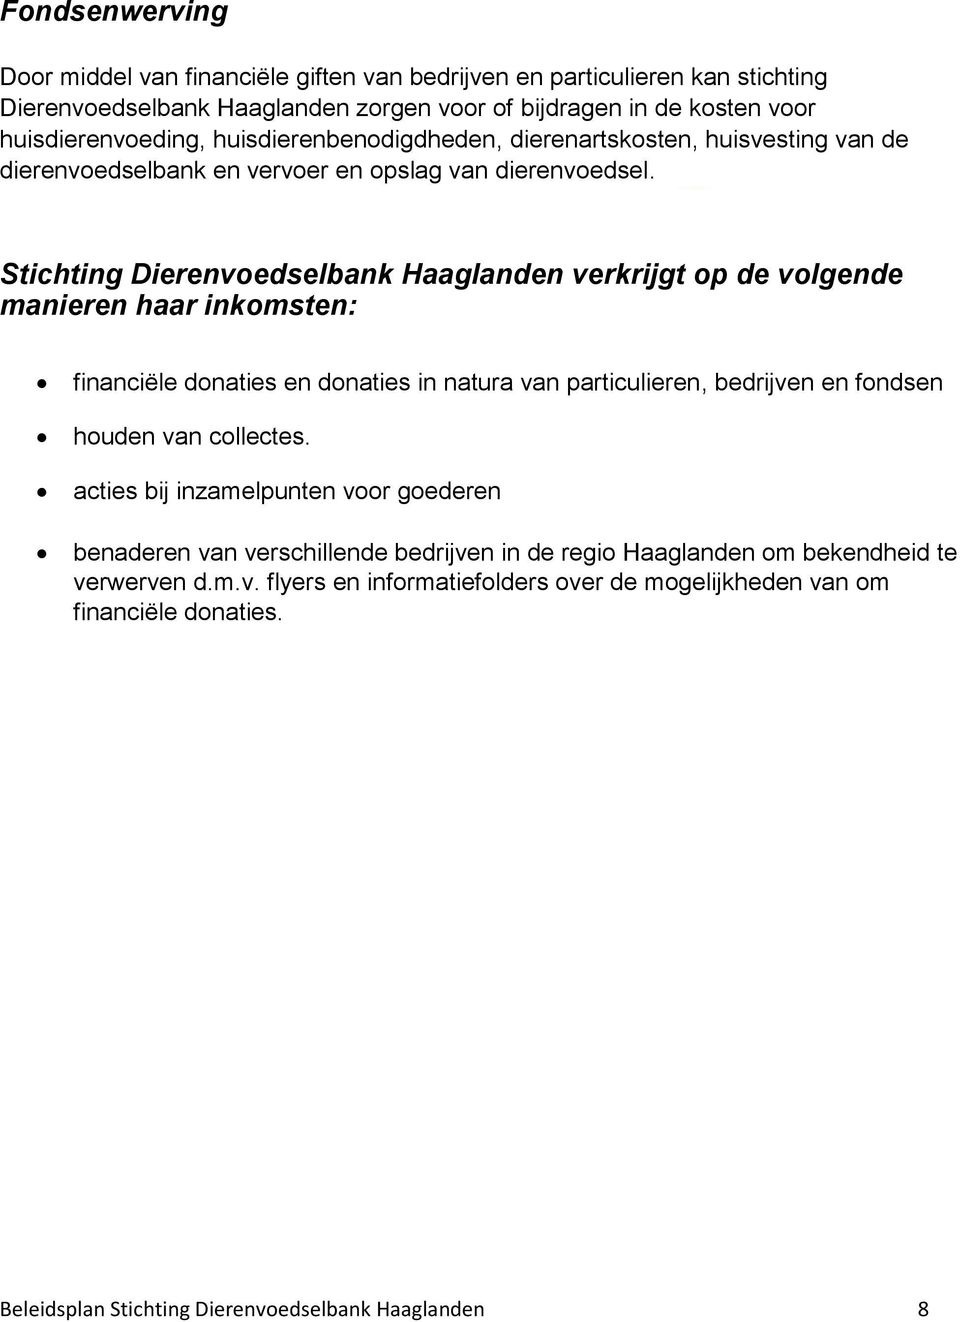 Stichting Dierenvoedselbank Haaglanden verkrijgt op de volgende manieren haar inkomsten: financiële donaties en donaties in natura van particulieren, bedrijven en fondsen houden van